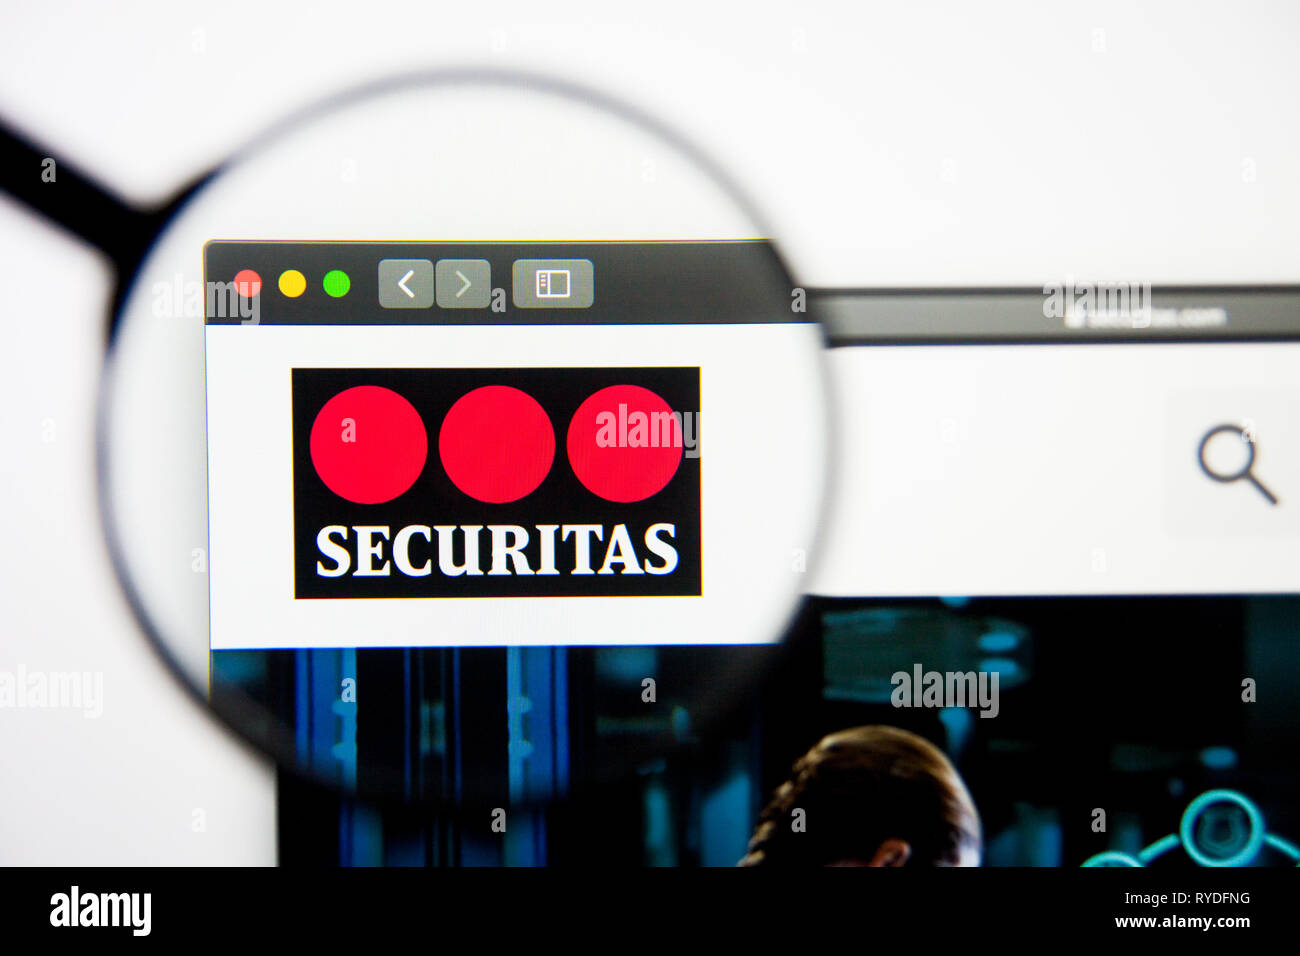 Los Angeles, Californie, USA - 28 Février 2019 : Securitas accueil du site. Logo Securitas visible sur l'écran d'affichage, de rédaction d'illustration Banque D'Images